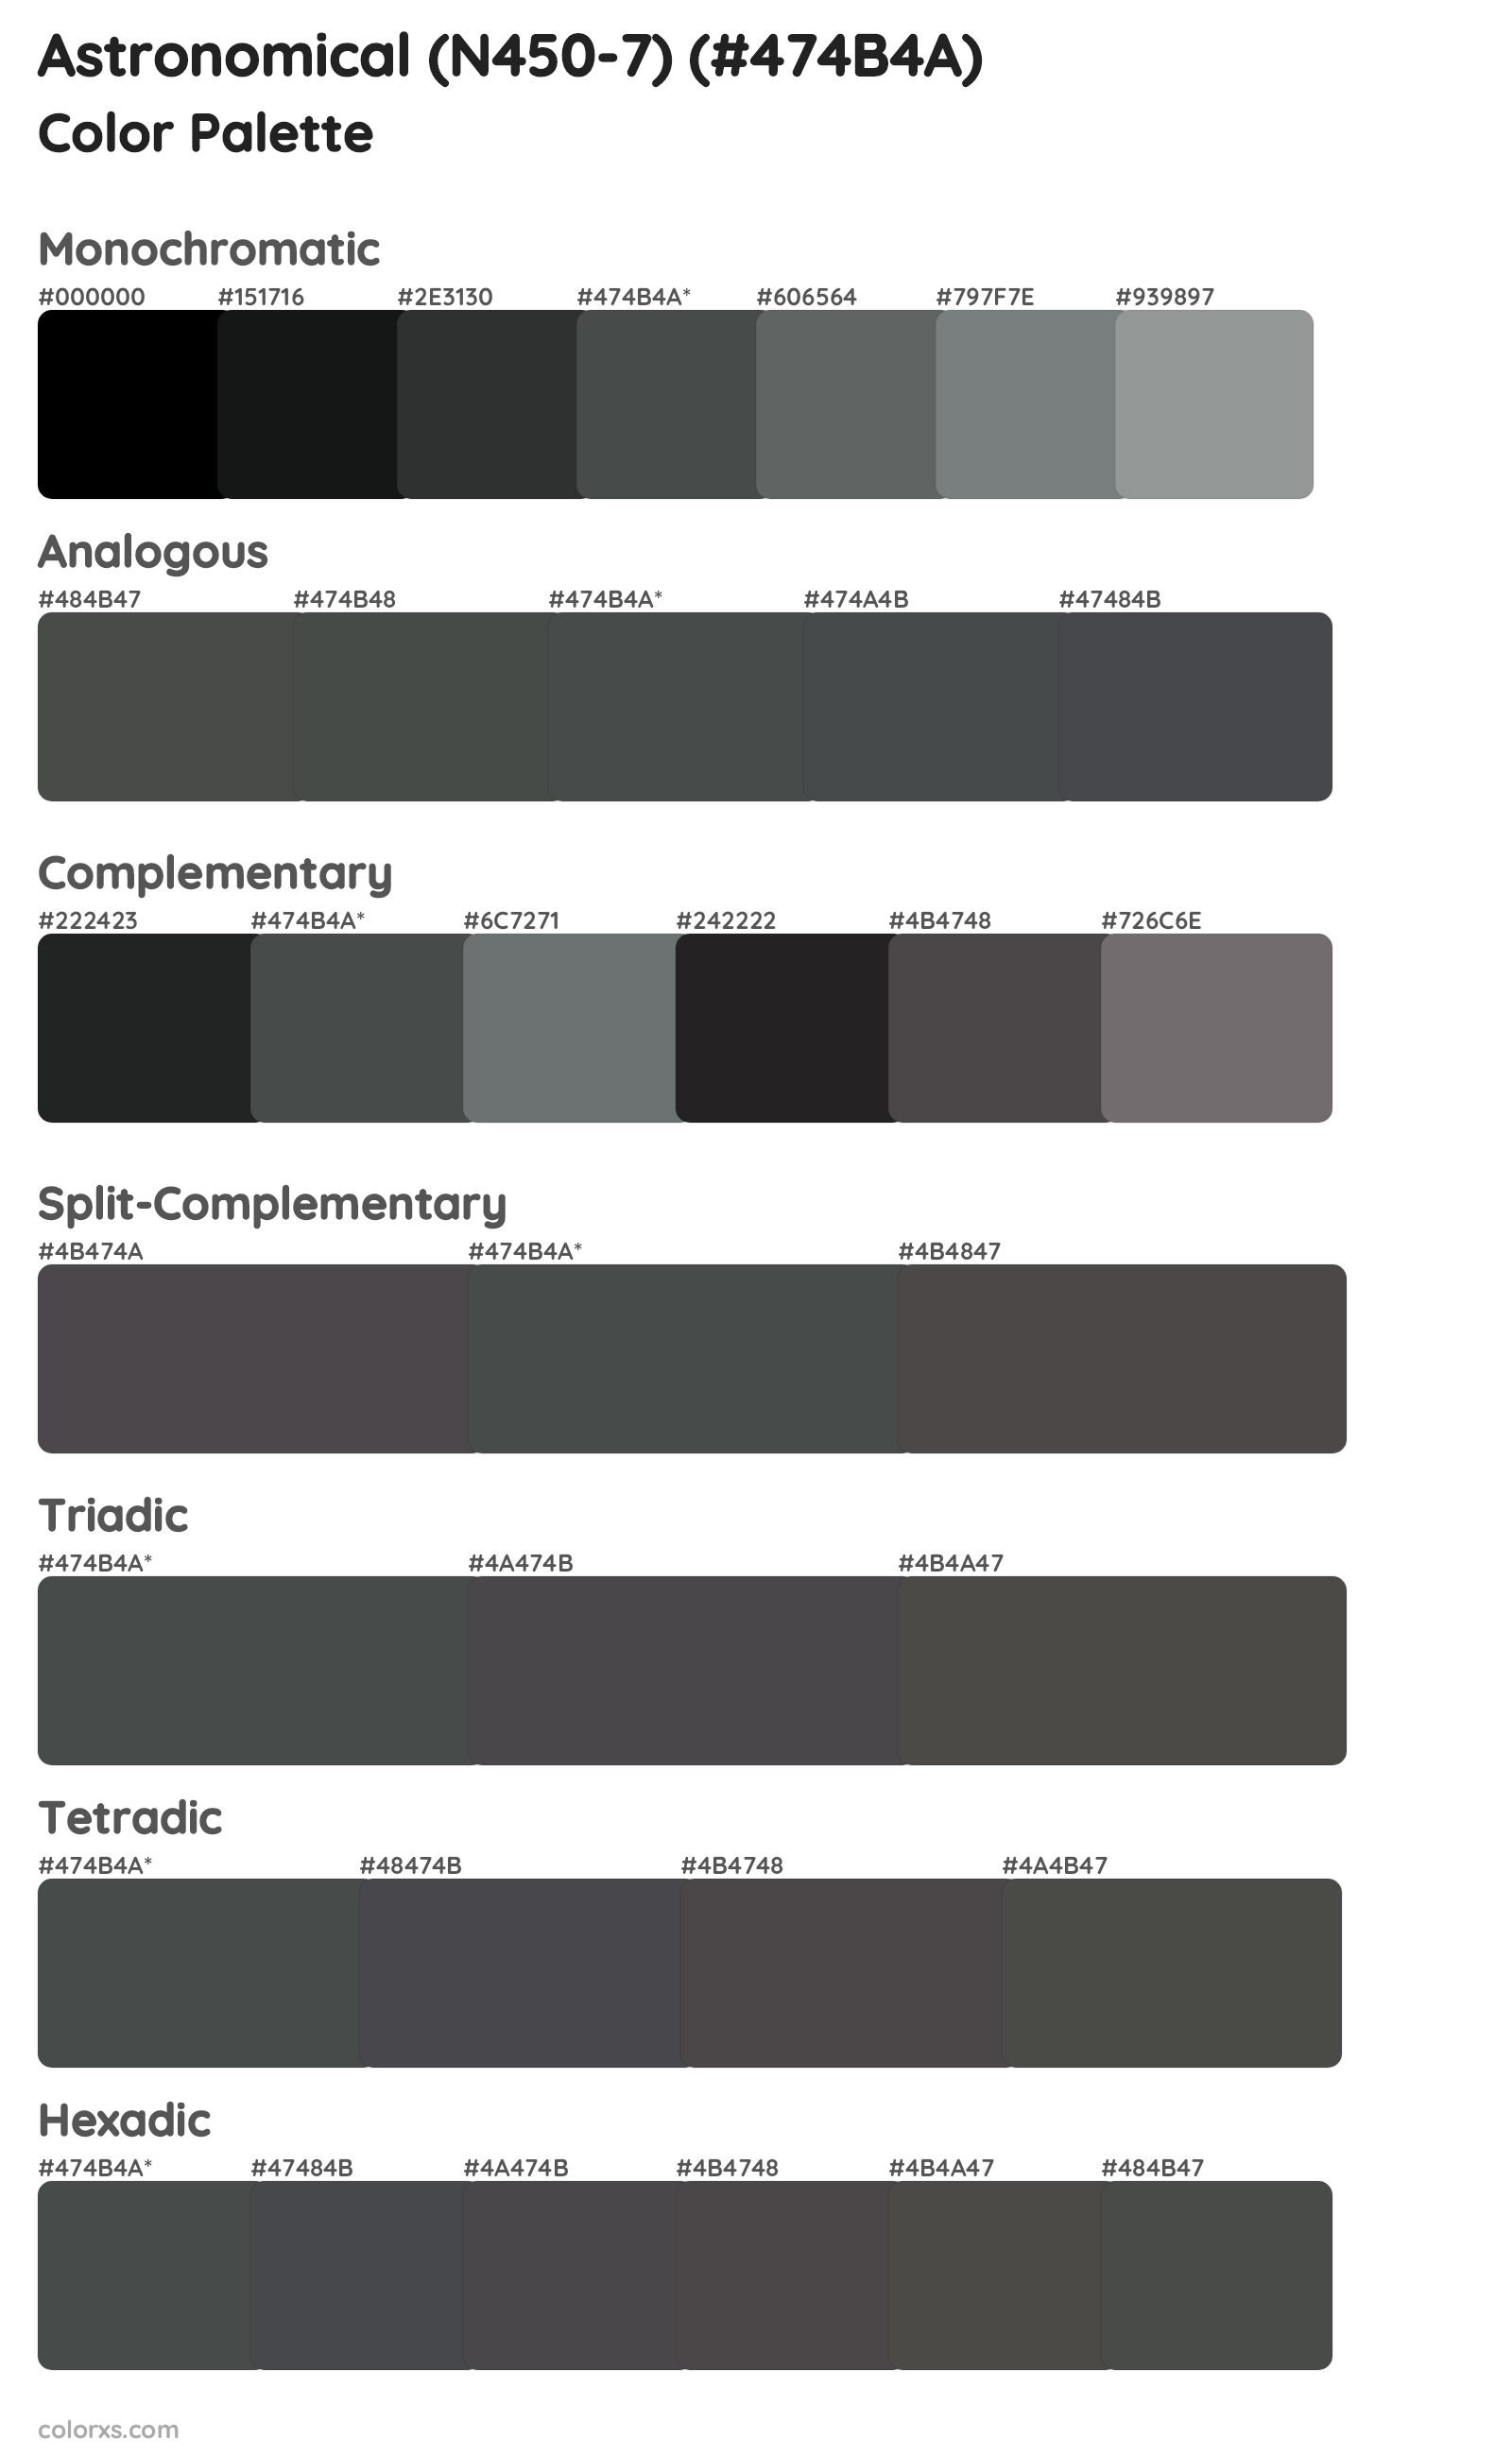 Astronomical (N450-7) Color Scheme Palettes